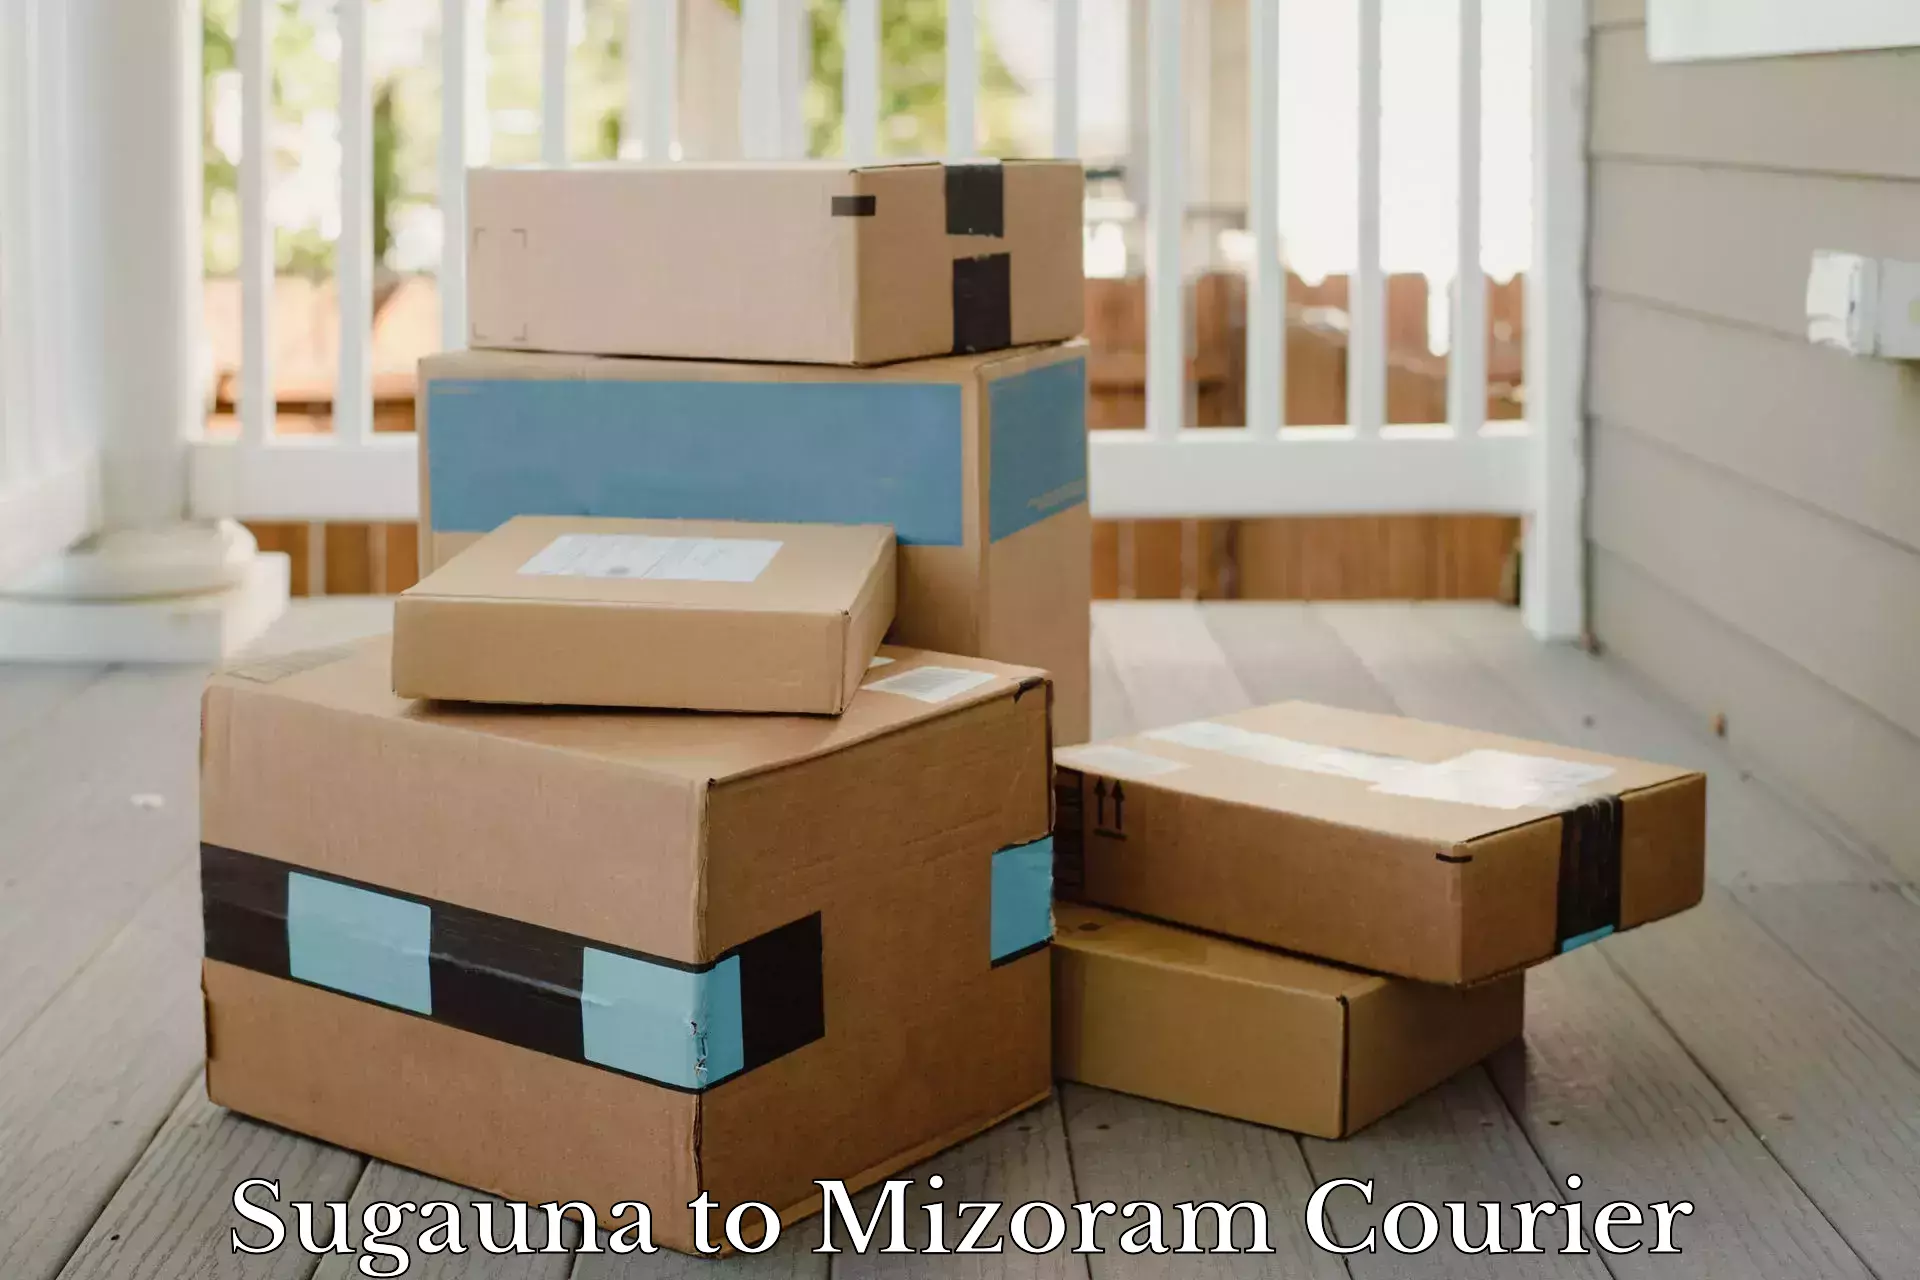 Customer-centric shipping in Sugauna to Saitual